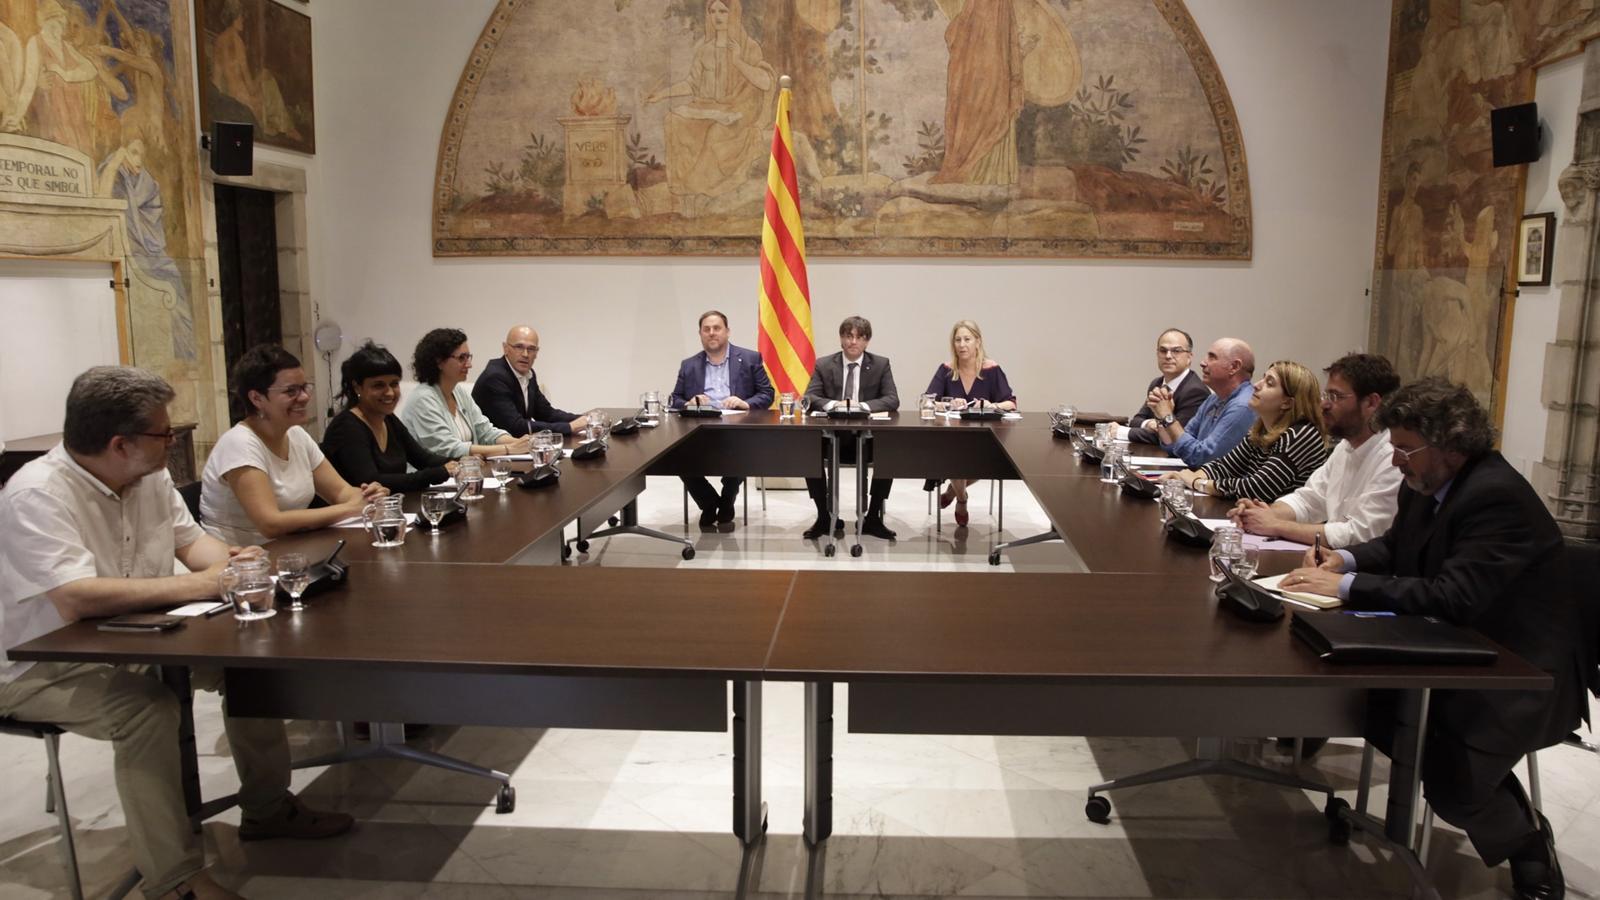 En marxa la cimera de partits al Palau de la Generalitat per abordar el referèndum unilateral